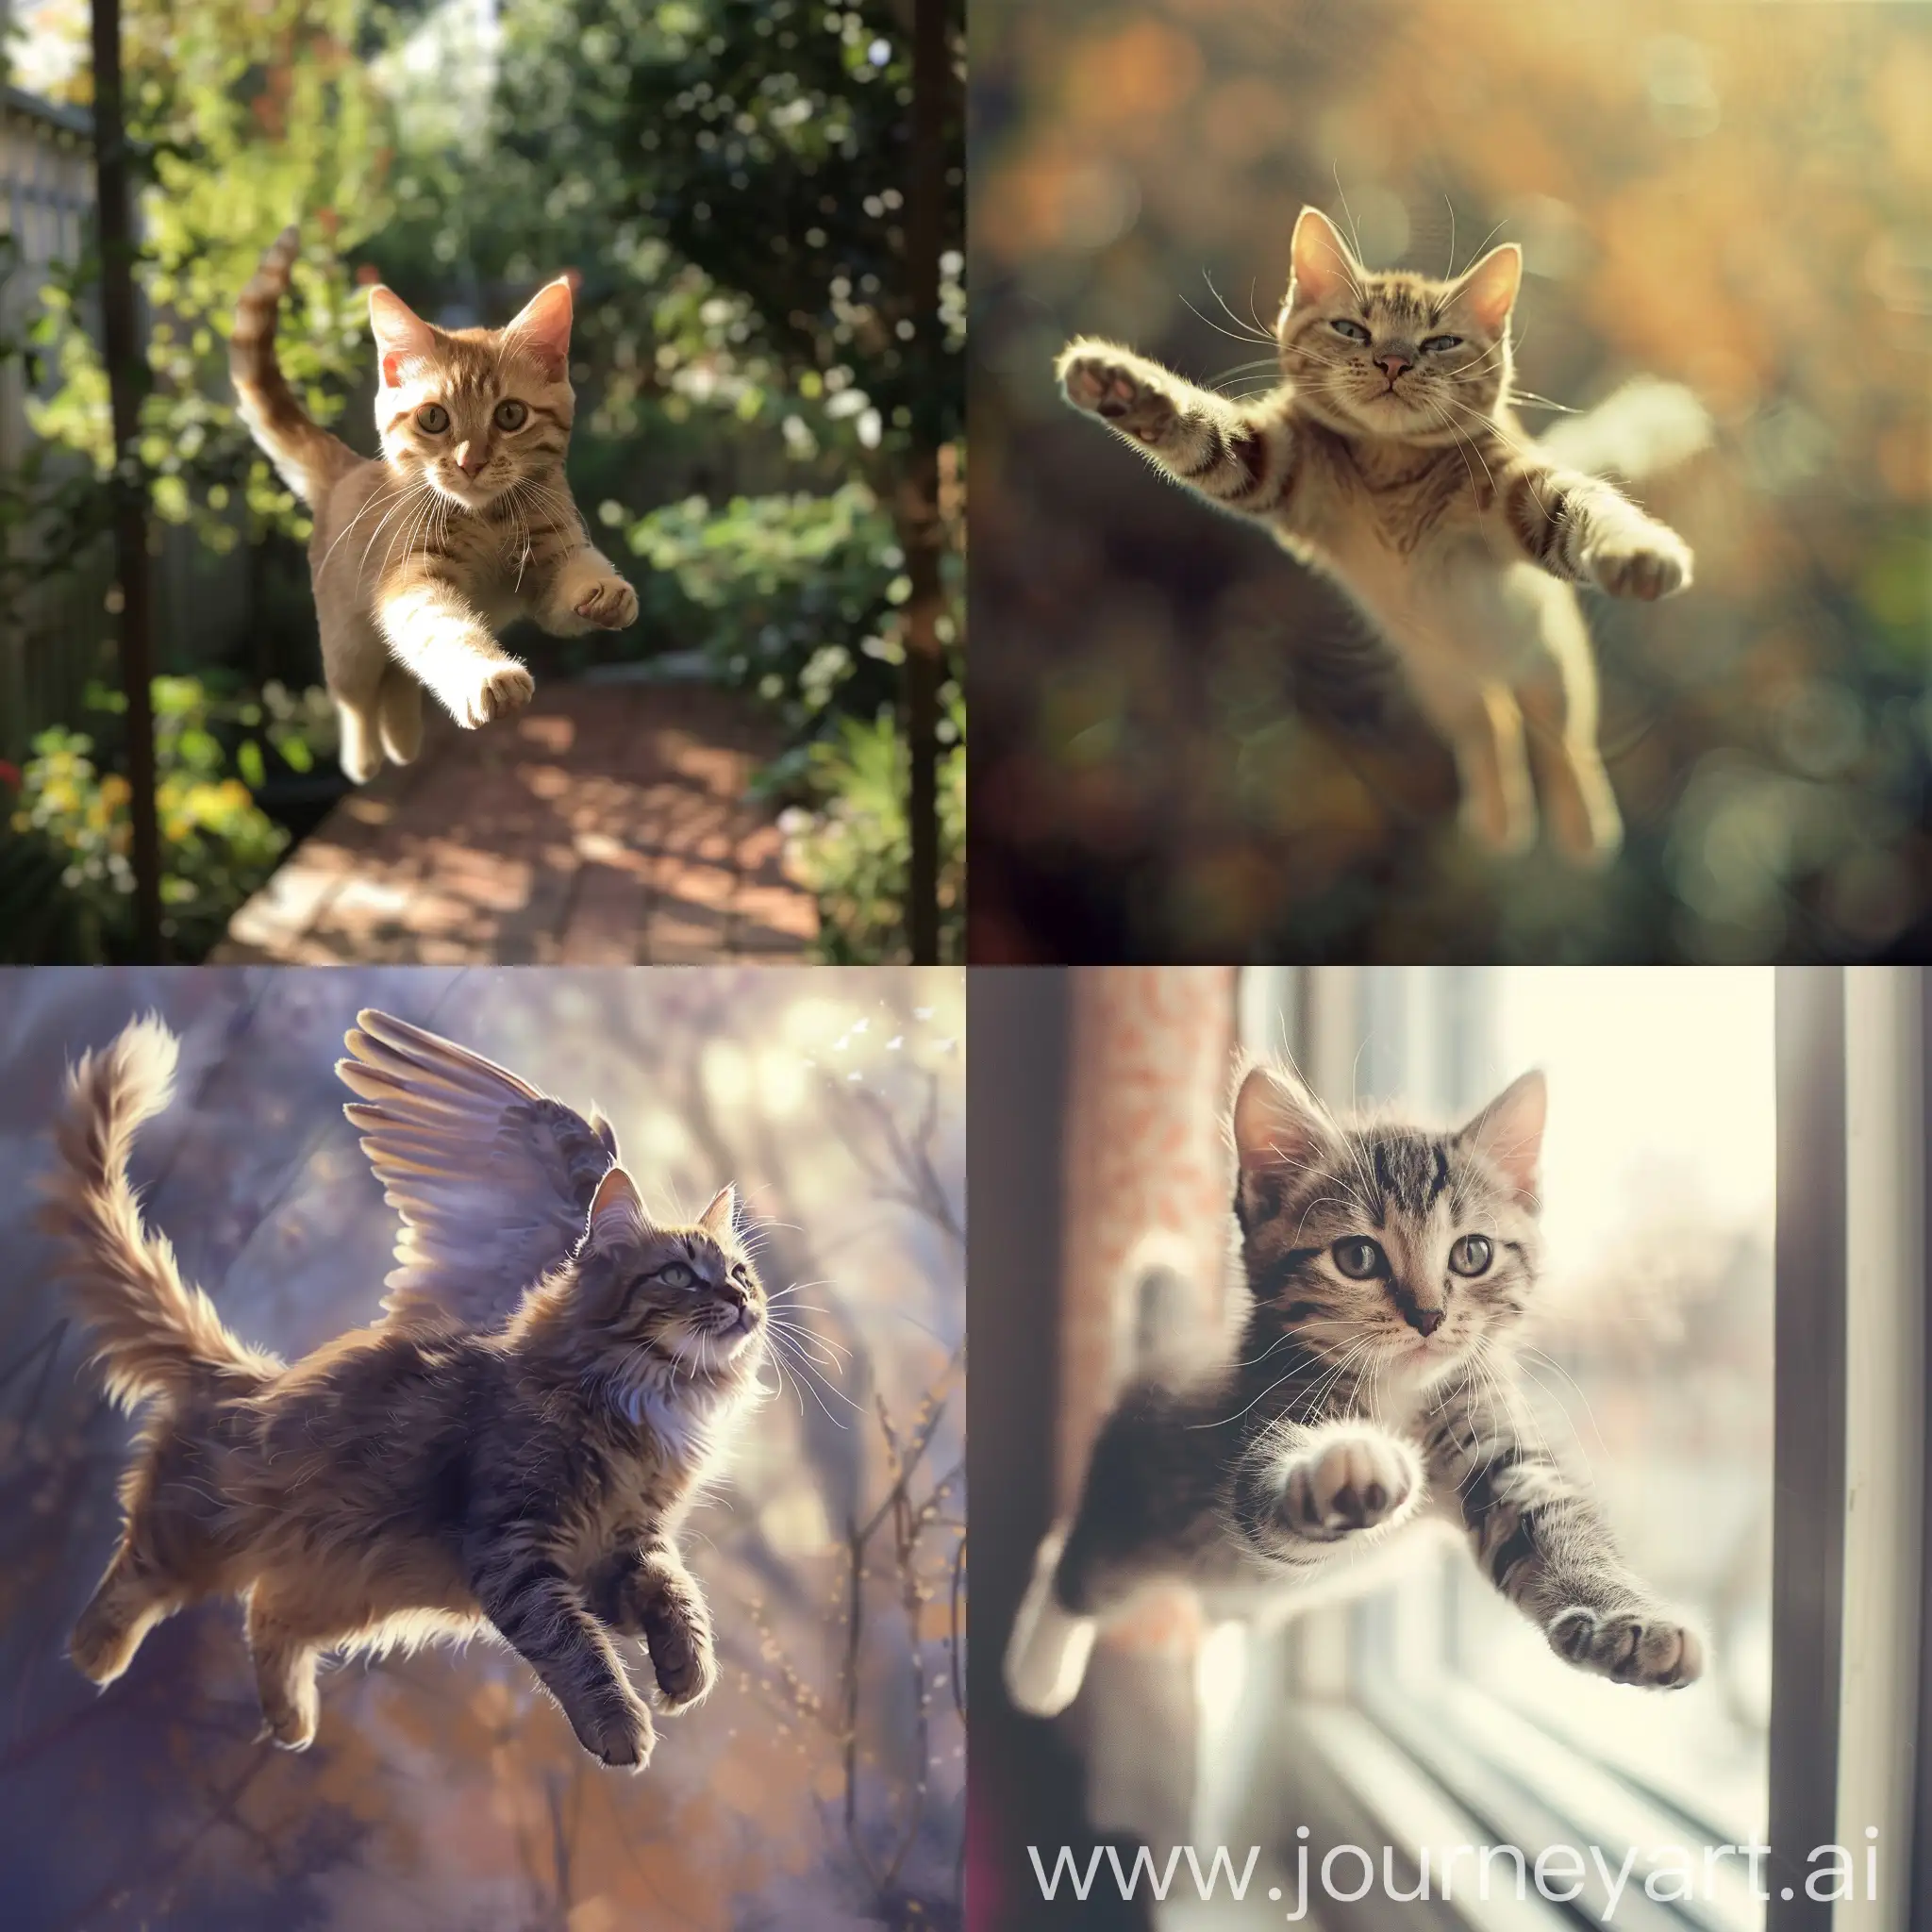 Flying-Cat-Whiskered-Feline-Soars-Through-the-Skies